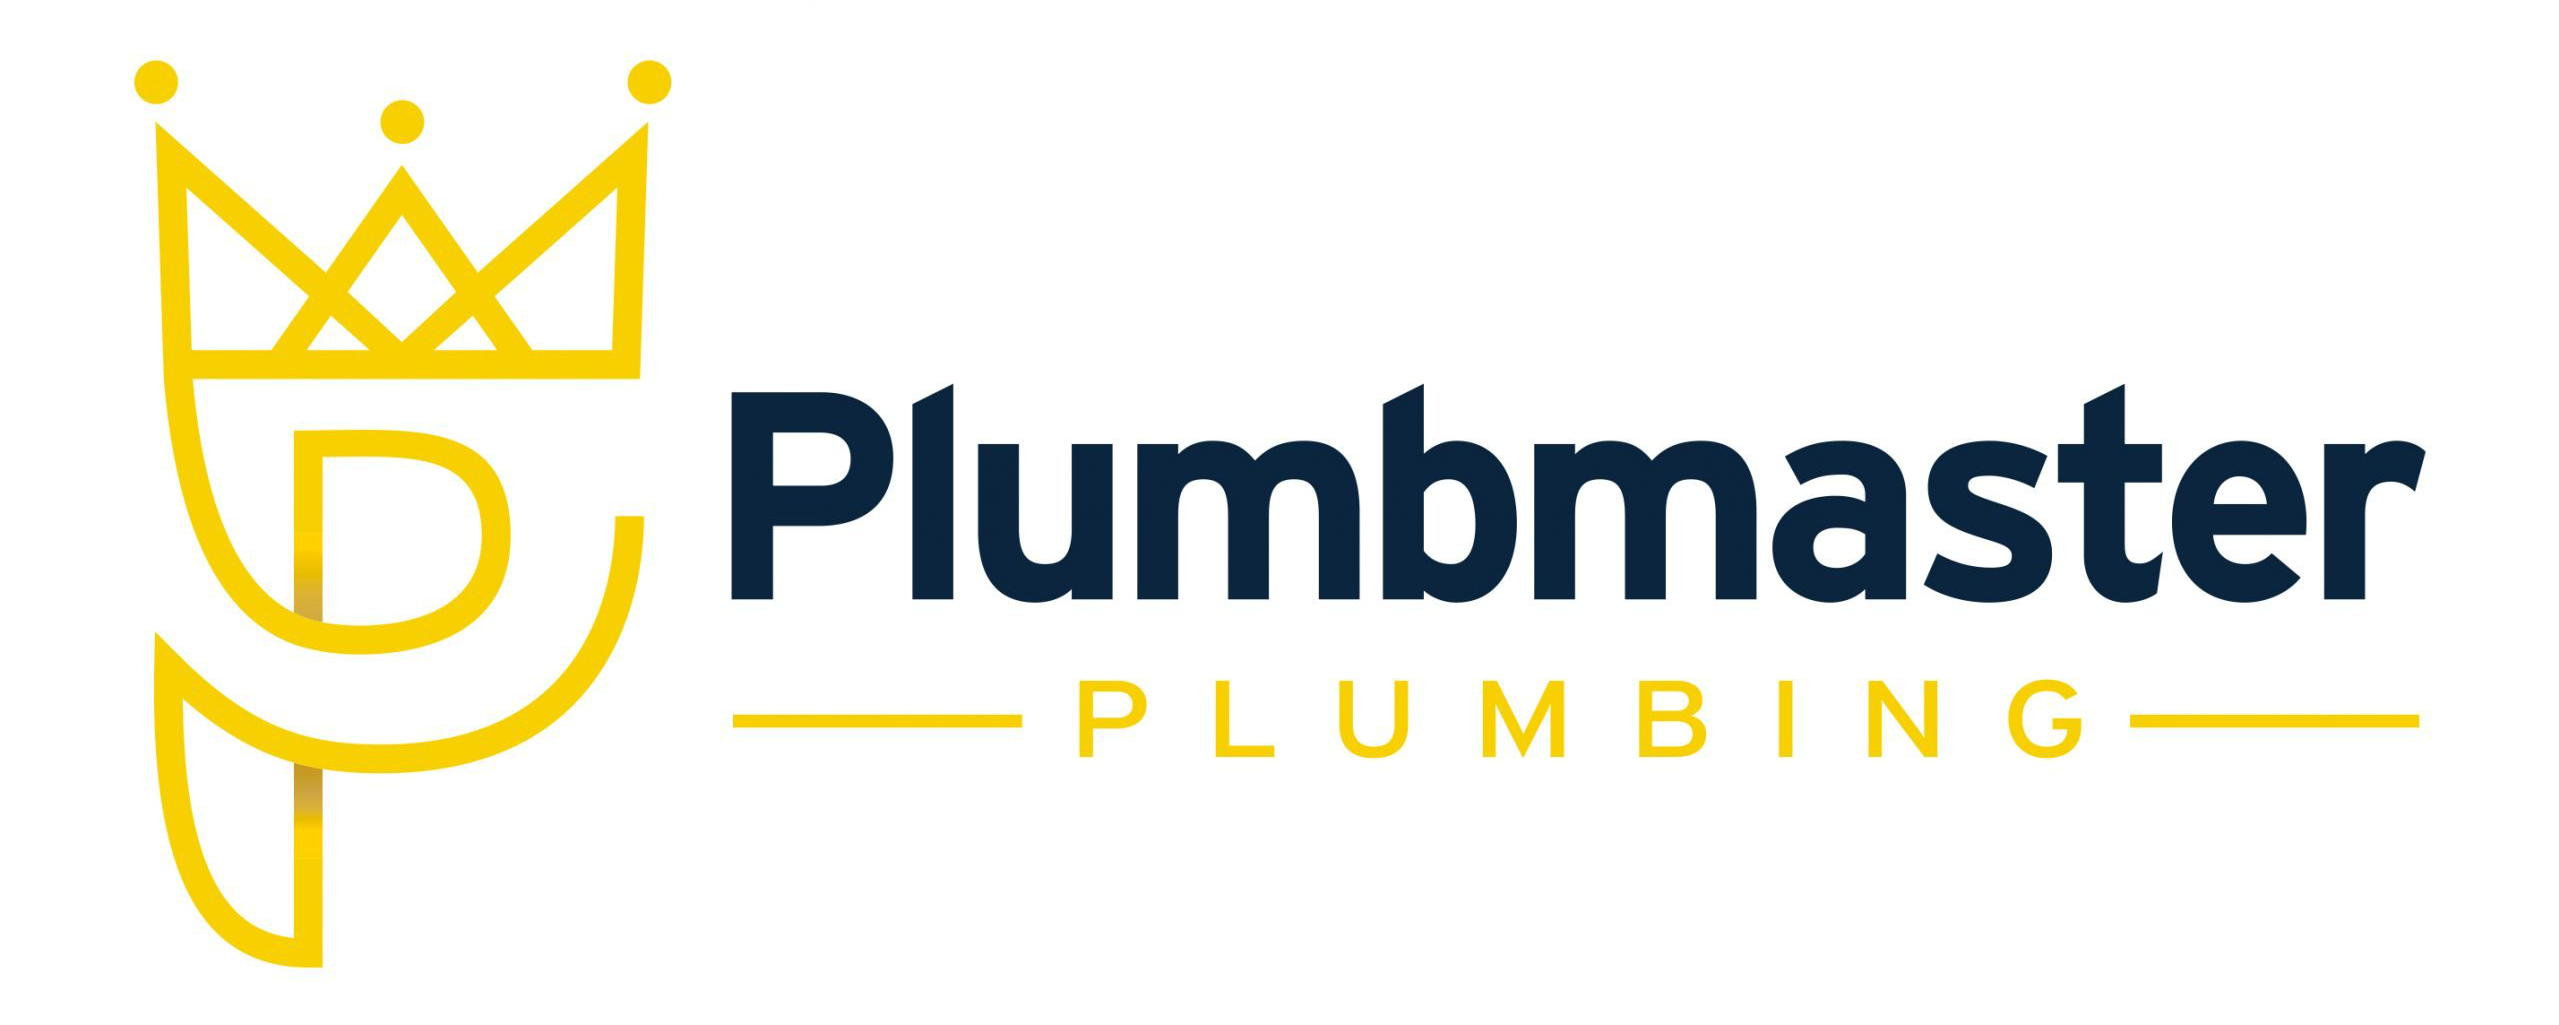 Plumbmaster Plumbing